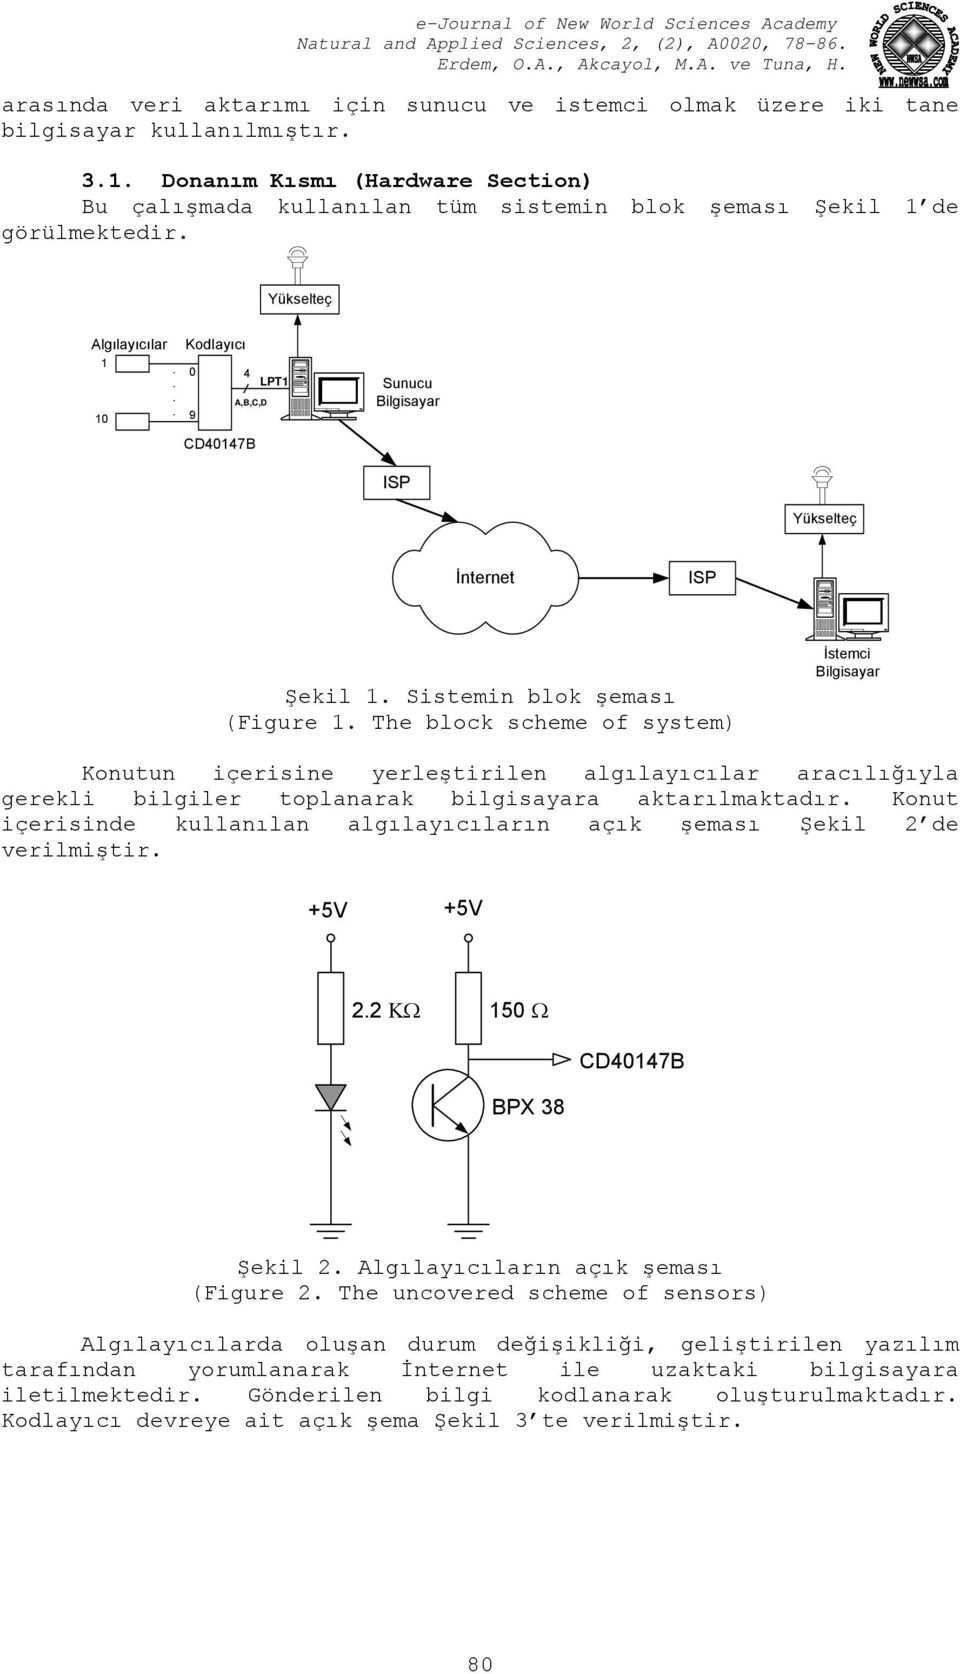 ... Kodlayıcı 0 9 CD40147B 4 LPT1 A,B,C,D Sunucu Bilgisayar ISP Yükselteç İnternet ISP Şekil 1. Sistemin blok şeması (Figure 1.